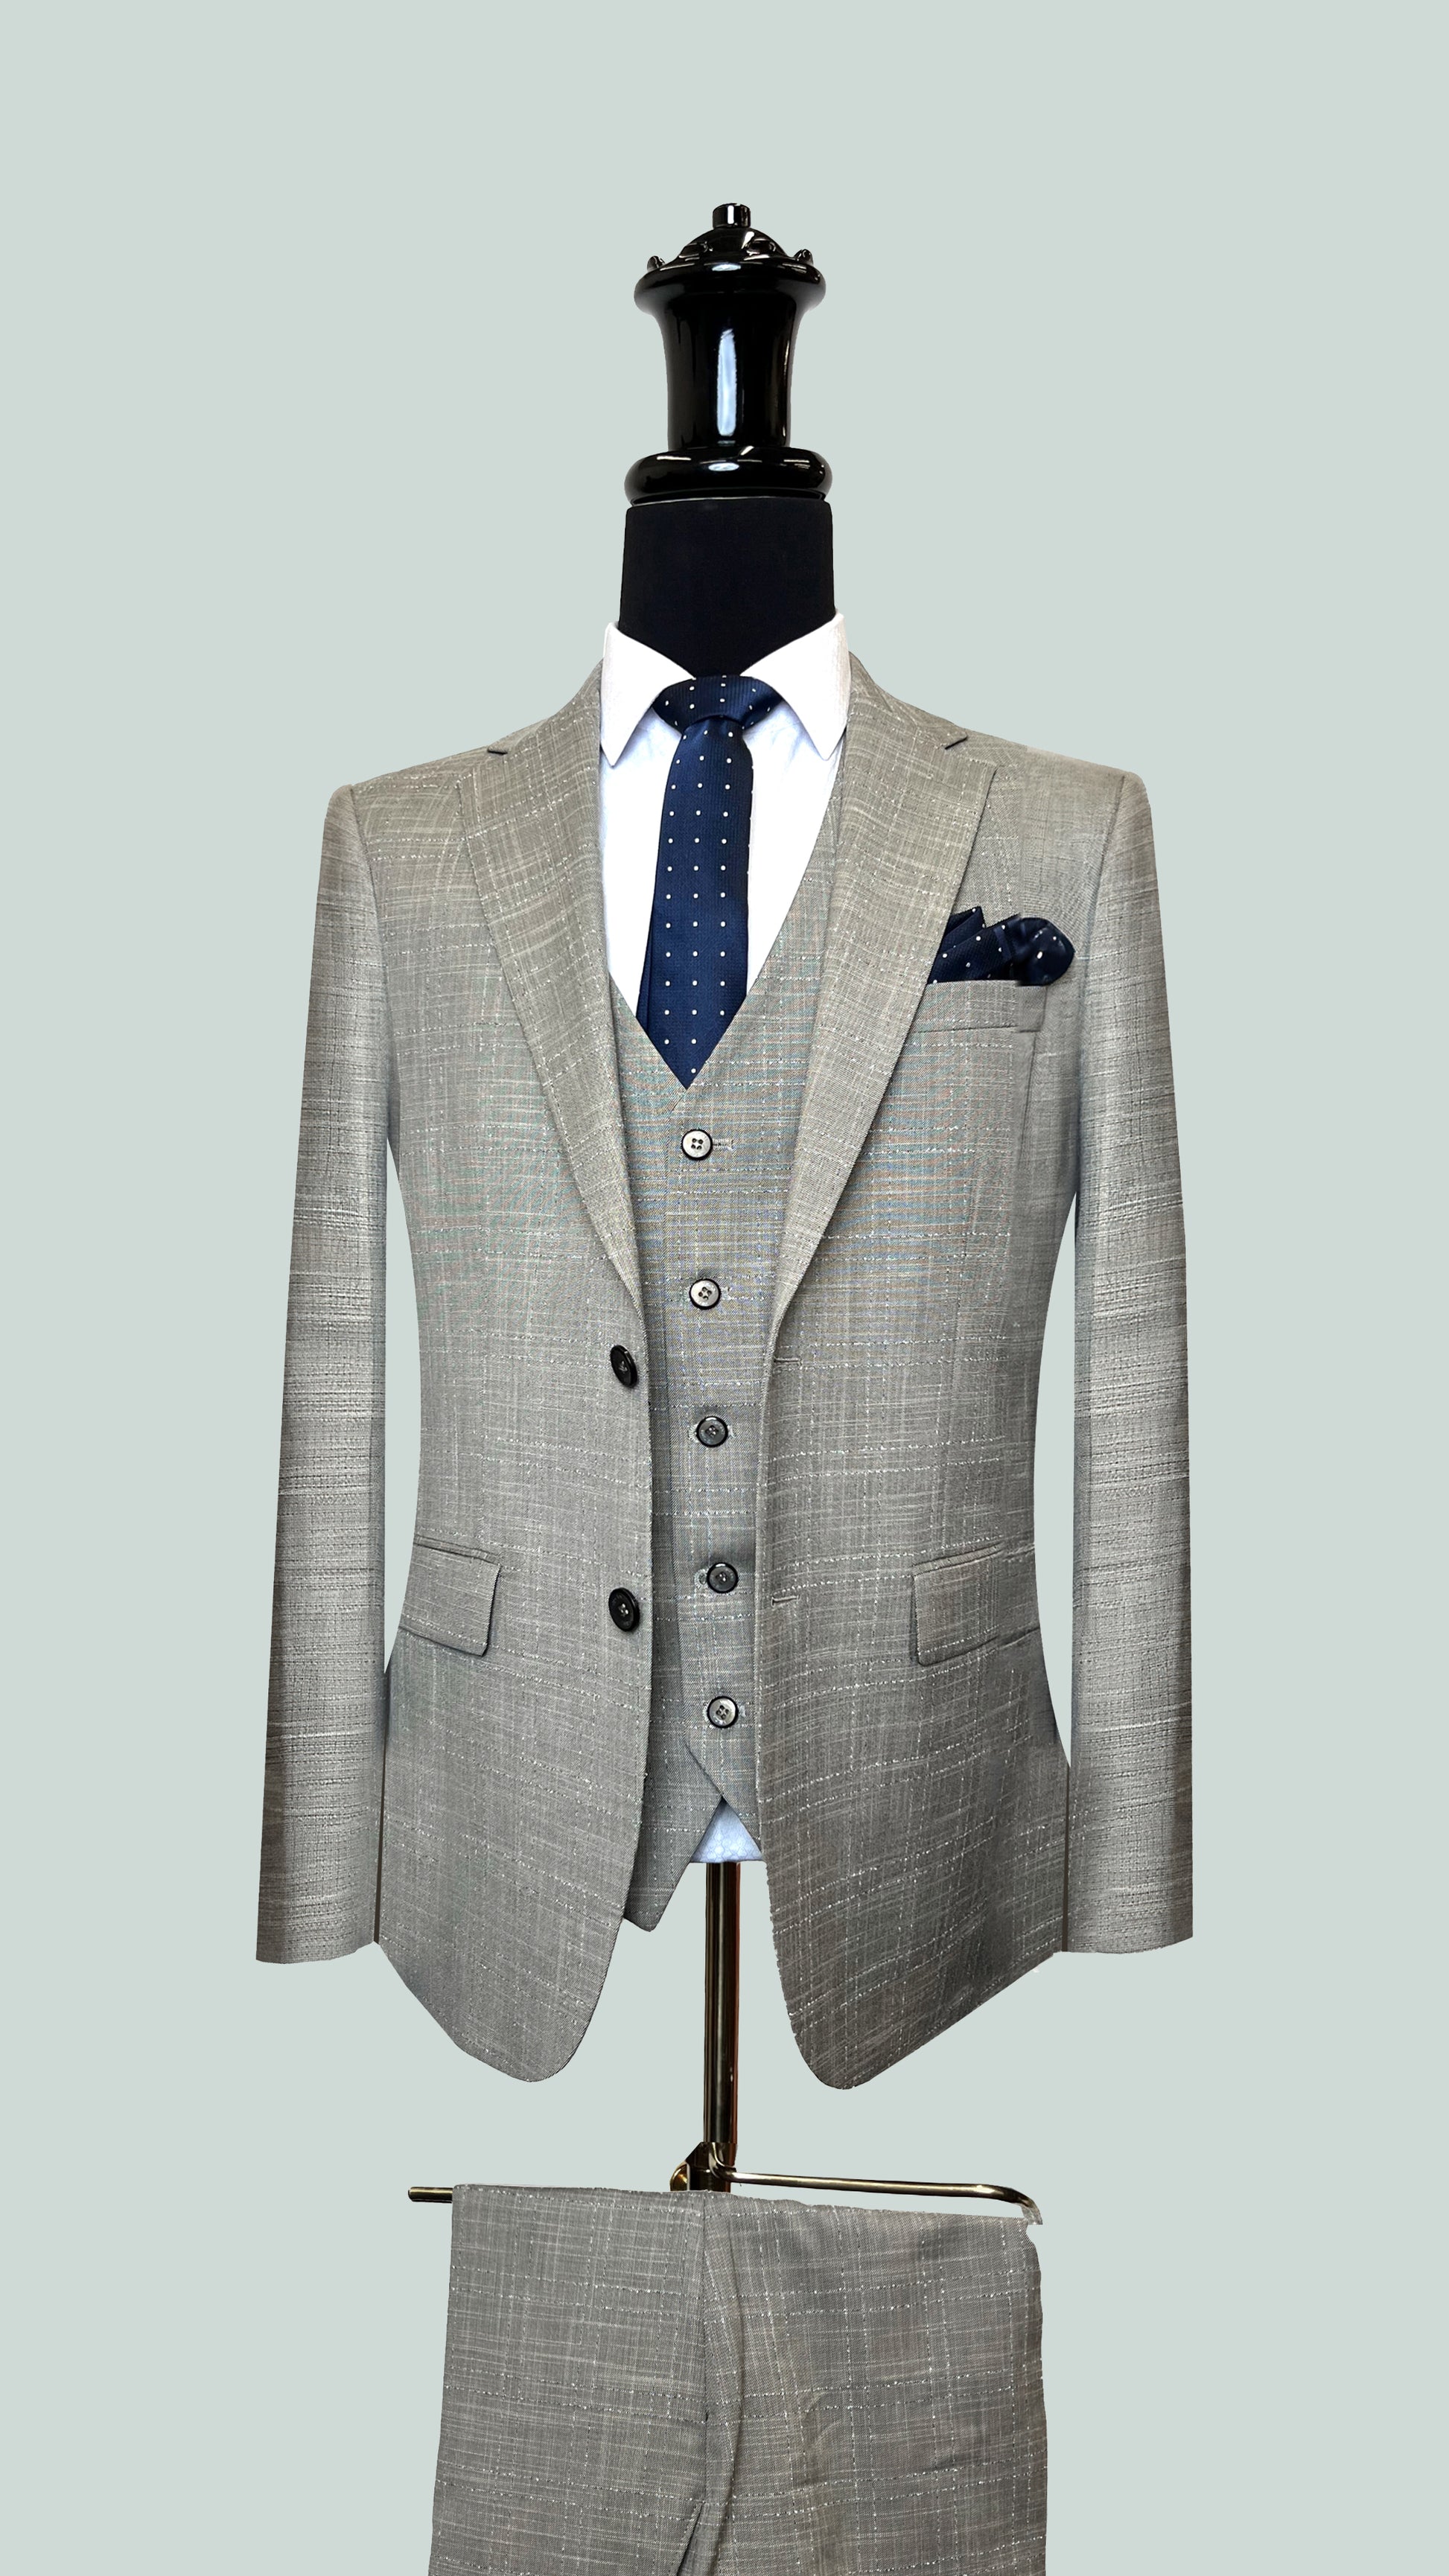 Vercini Urban Silverline Vestment Suit SUITS 3 Piece Suits Vercini